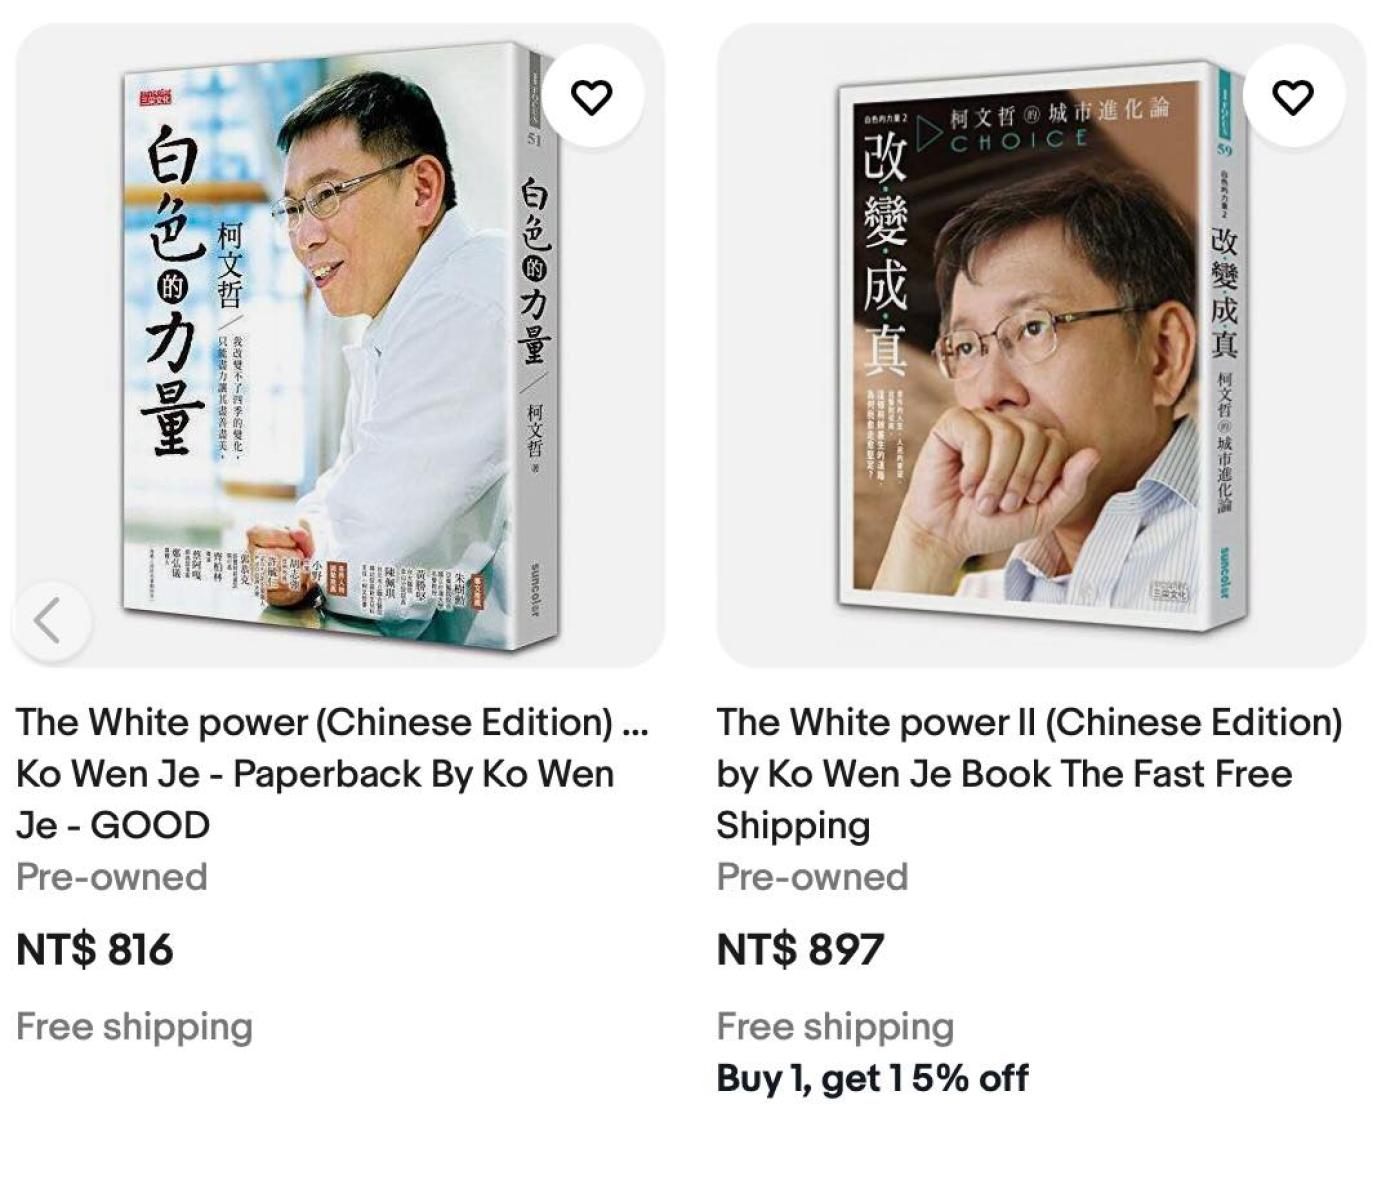 柯文哲2014年出版的兩本書在外國網購平台上的英文書名為「White Power」。翻攝張之豪臉書